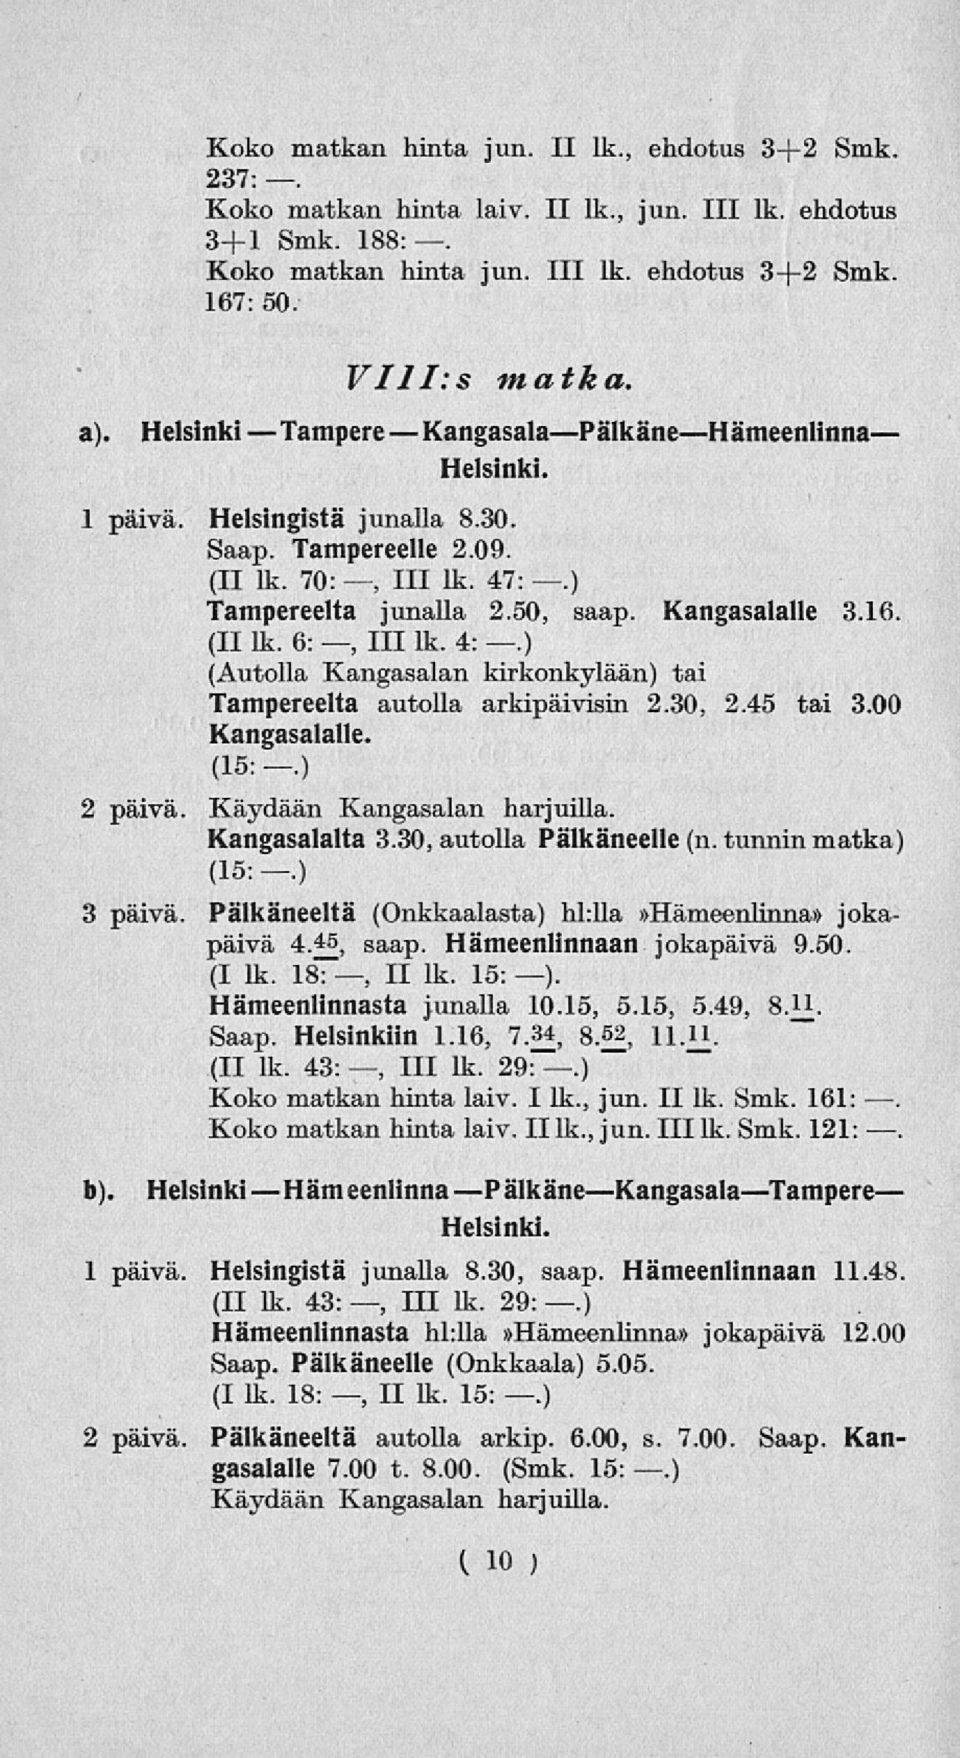 Kangasalalle 3.16 (II lk. 6:, 111 lk. 4:.) (Autolla Kangasalan kirkonkylään) tai Tampereelta autolla arkipäivisin 2.30, 2.45 tai 3.00 Kangasalalle. (15:.) 2 päivä. Käydään Kangasalan harjuilla.